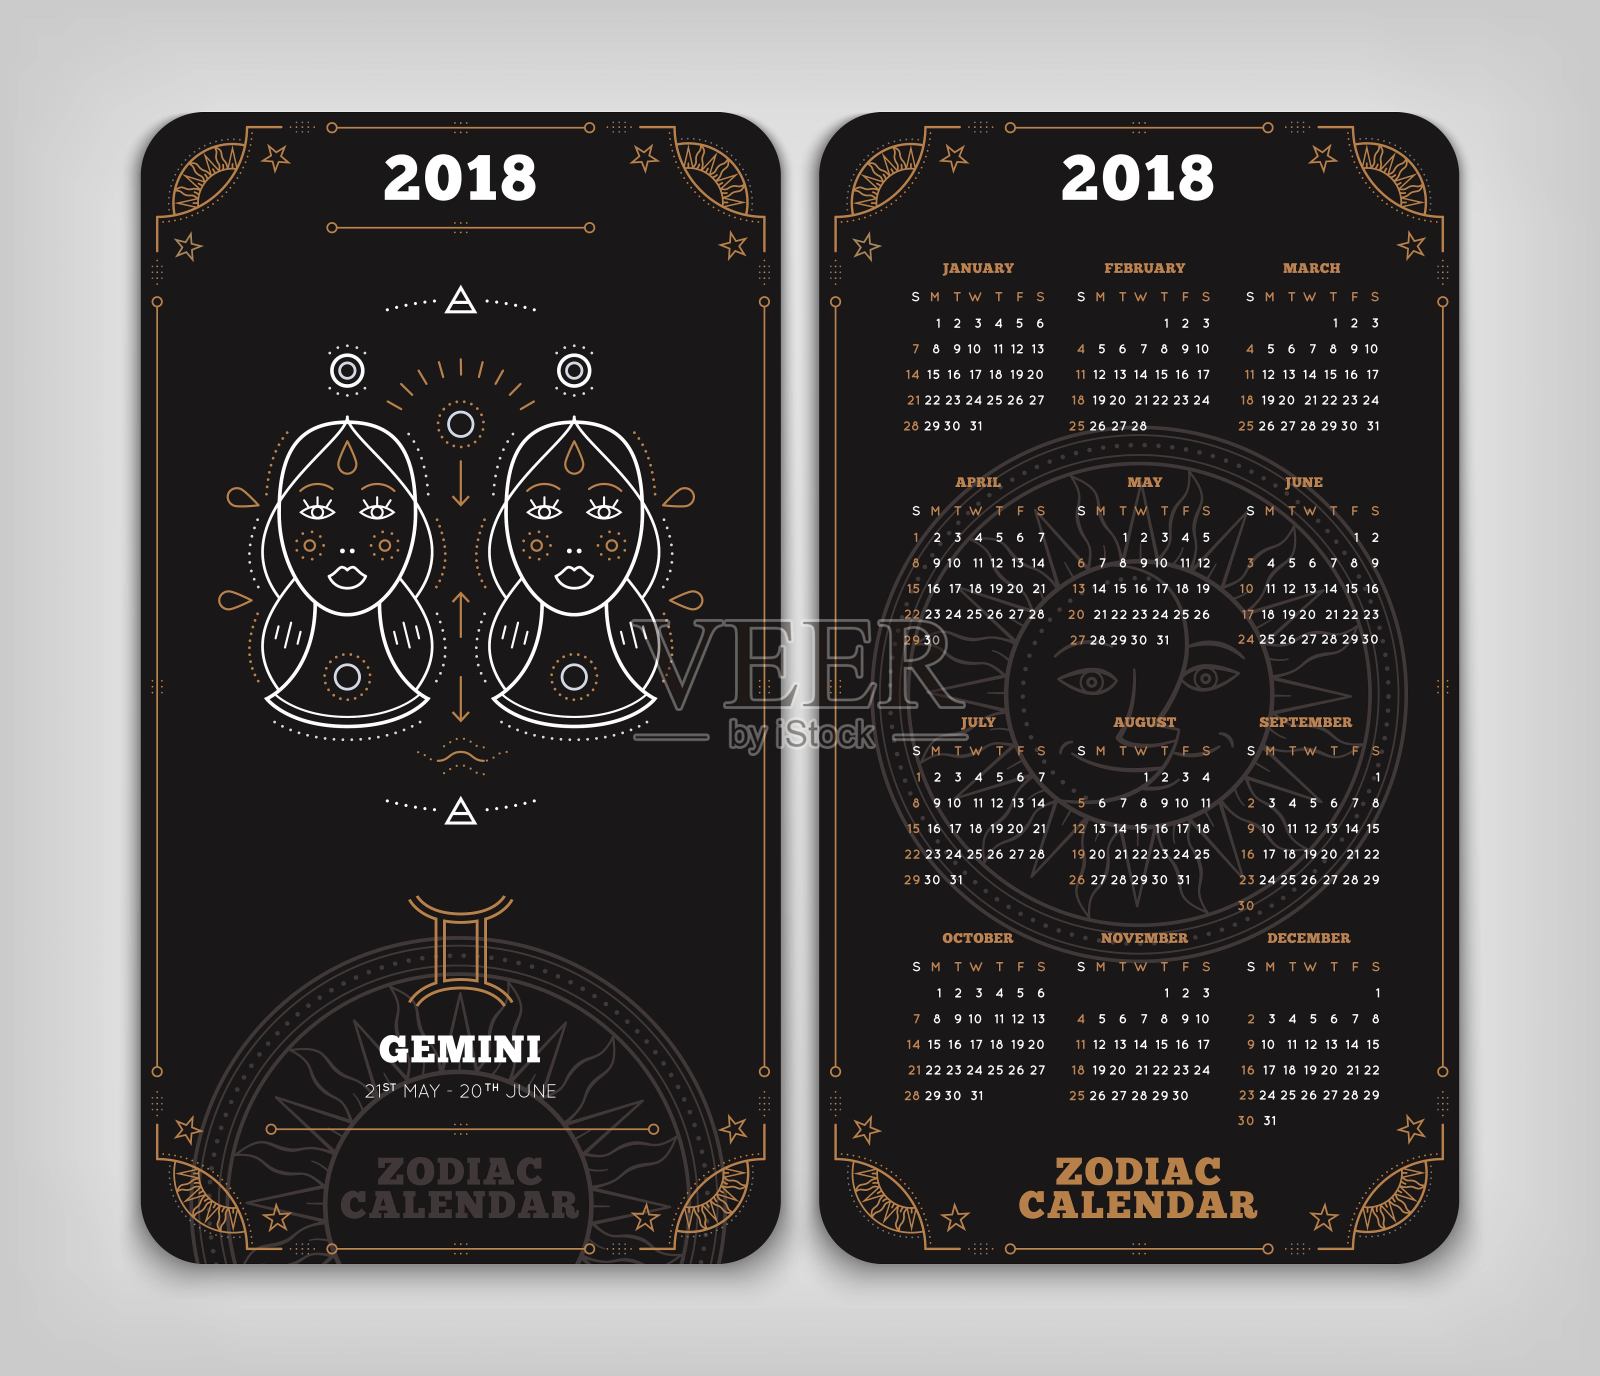 双子座2018年生肖日历口袋大小垂直布局双面黑色设计风格矢量概念插图设计模板素材